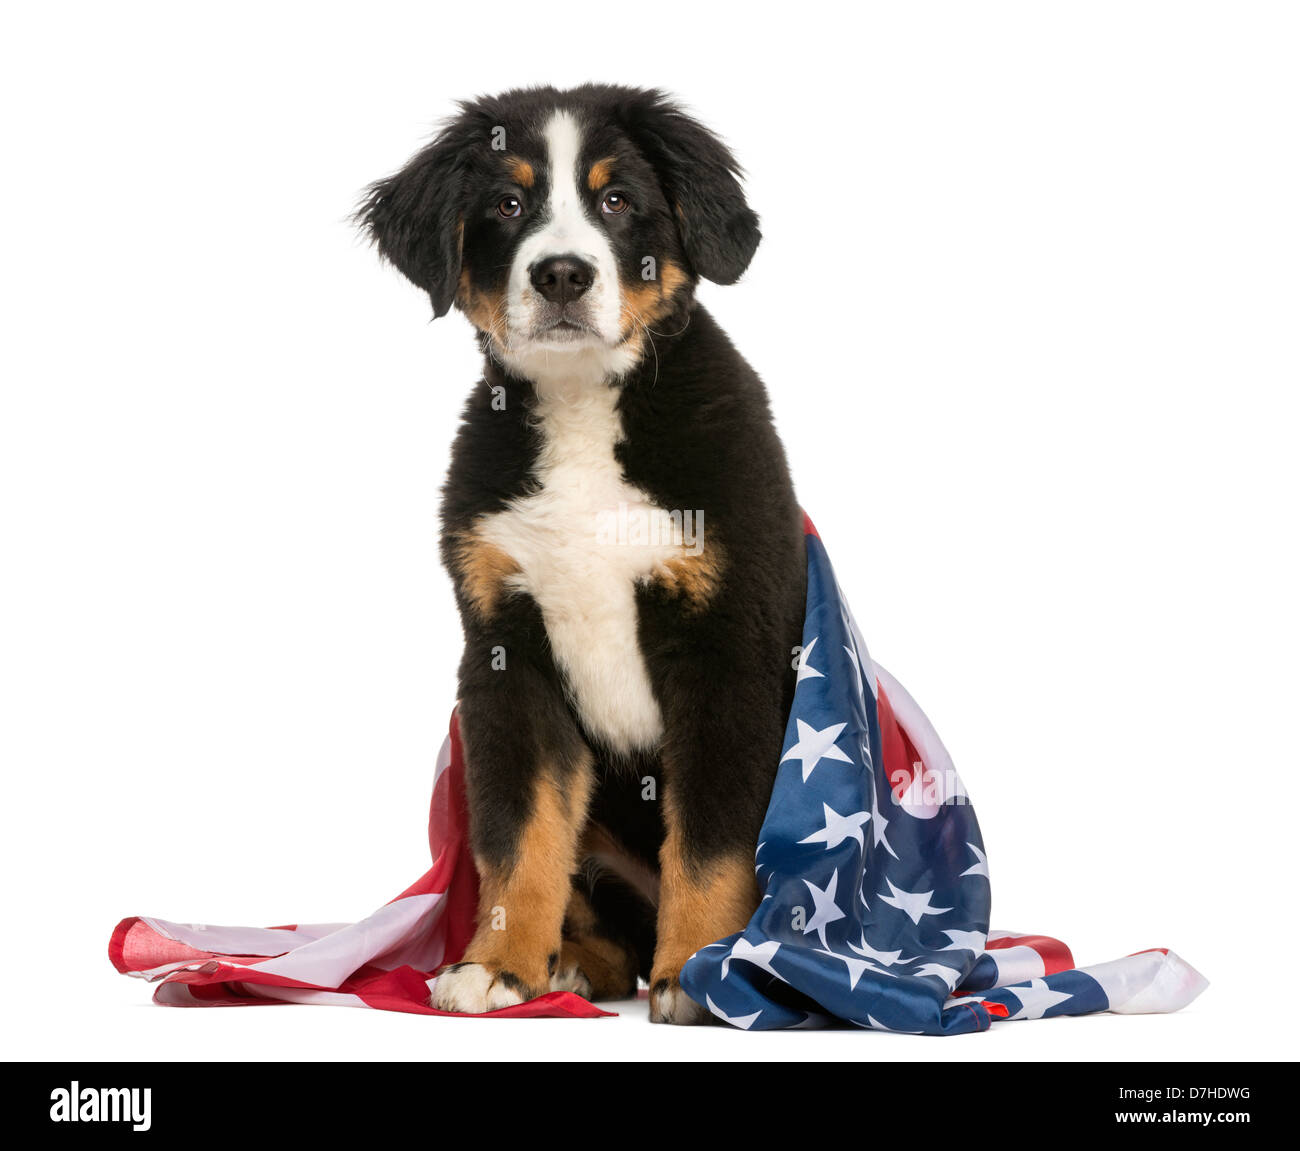 Bernese patriottica Mountain dog sitter con bandiera americana contro uno sfondo bianco Foto Stock